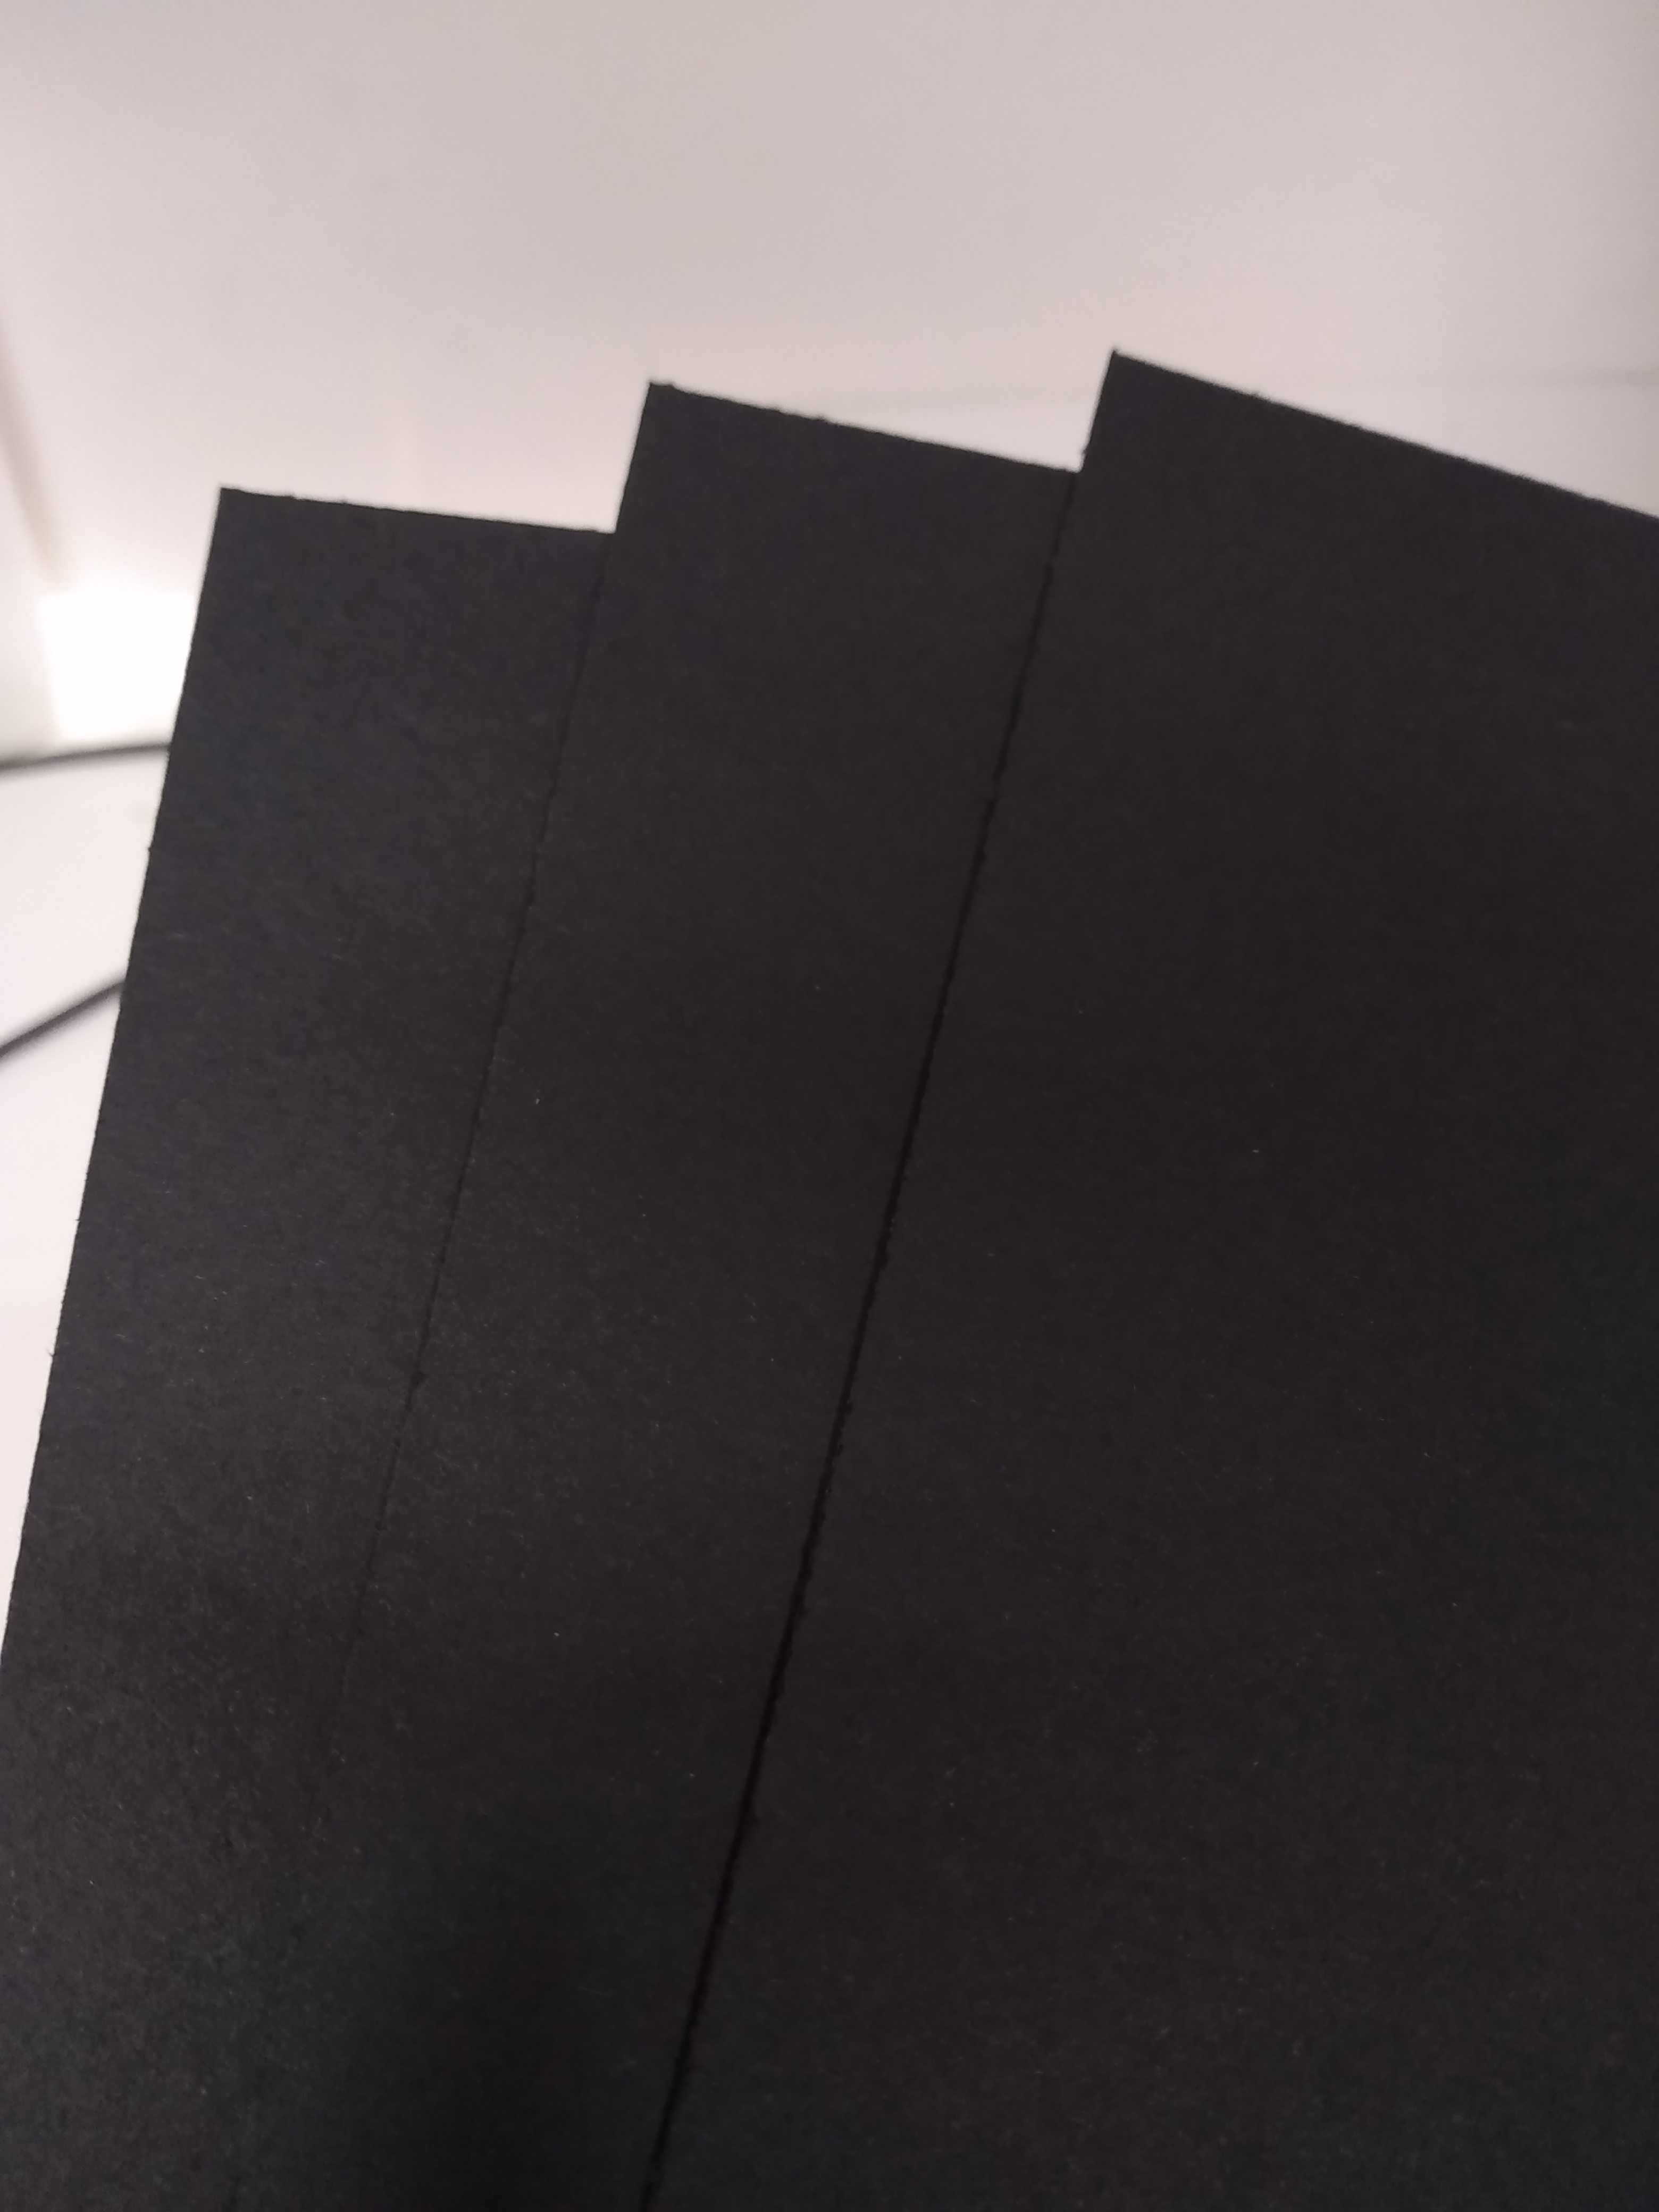 Carton Piedra Negro 1,4mm 77×55  Librery - Librería online Iquique